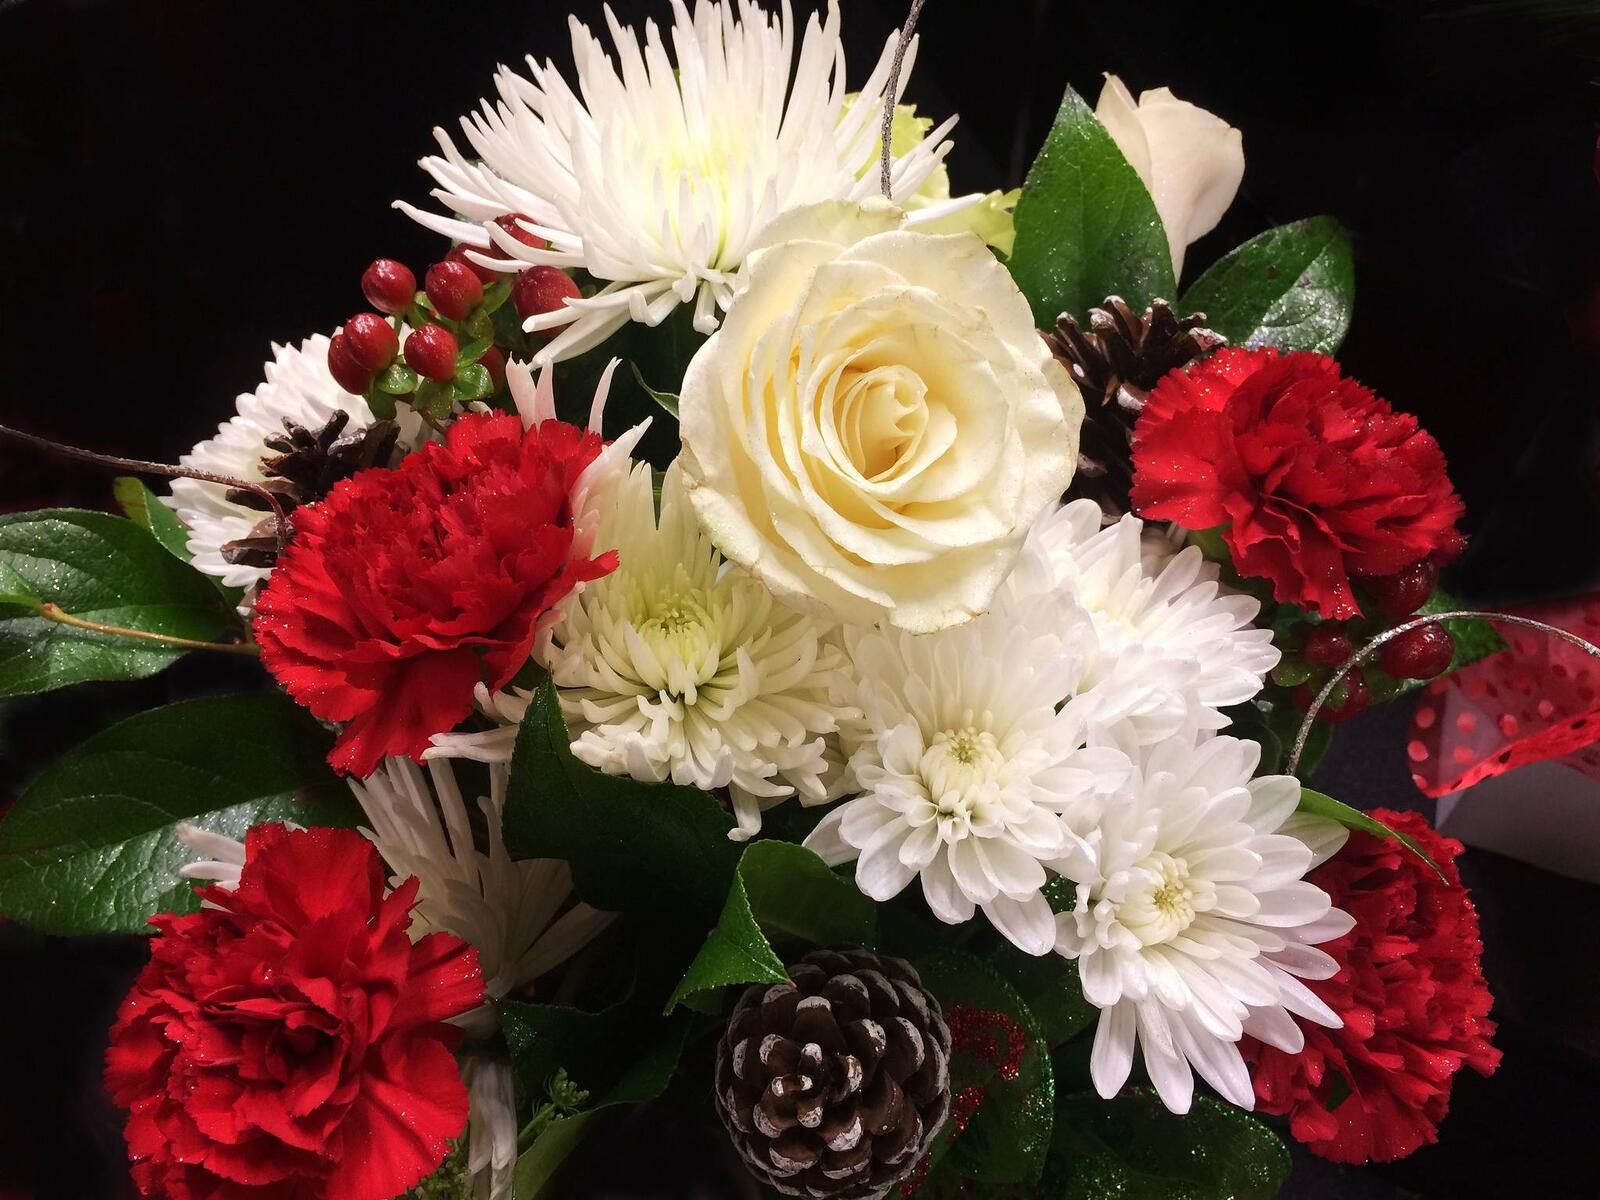 Обои флора цветы красивый букет на рабочий стол